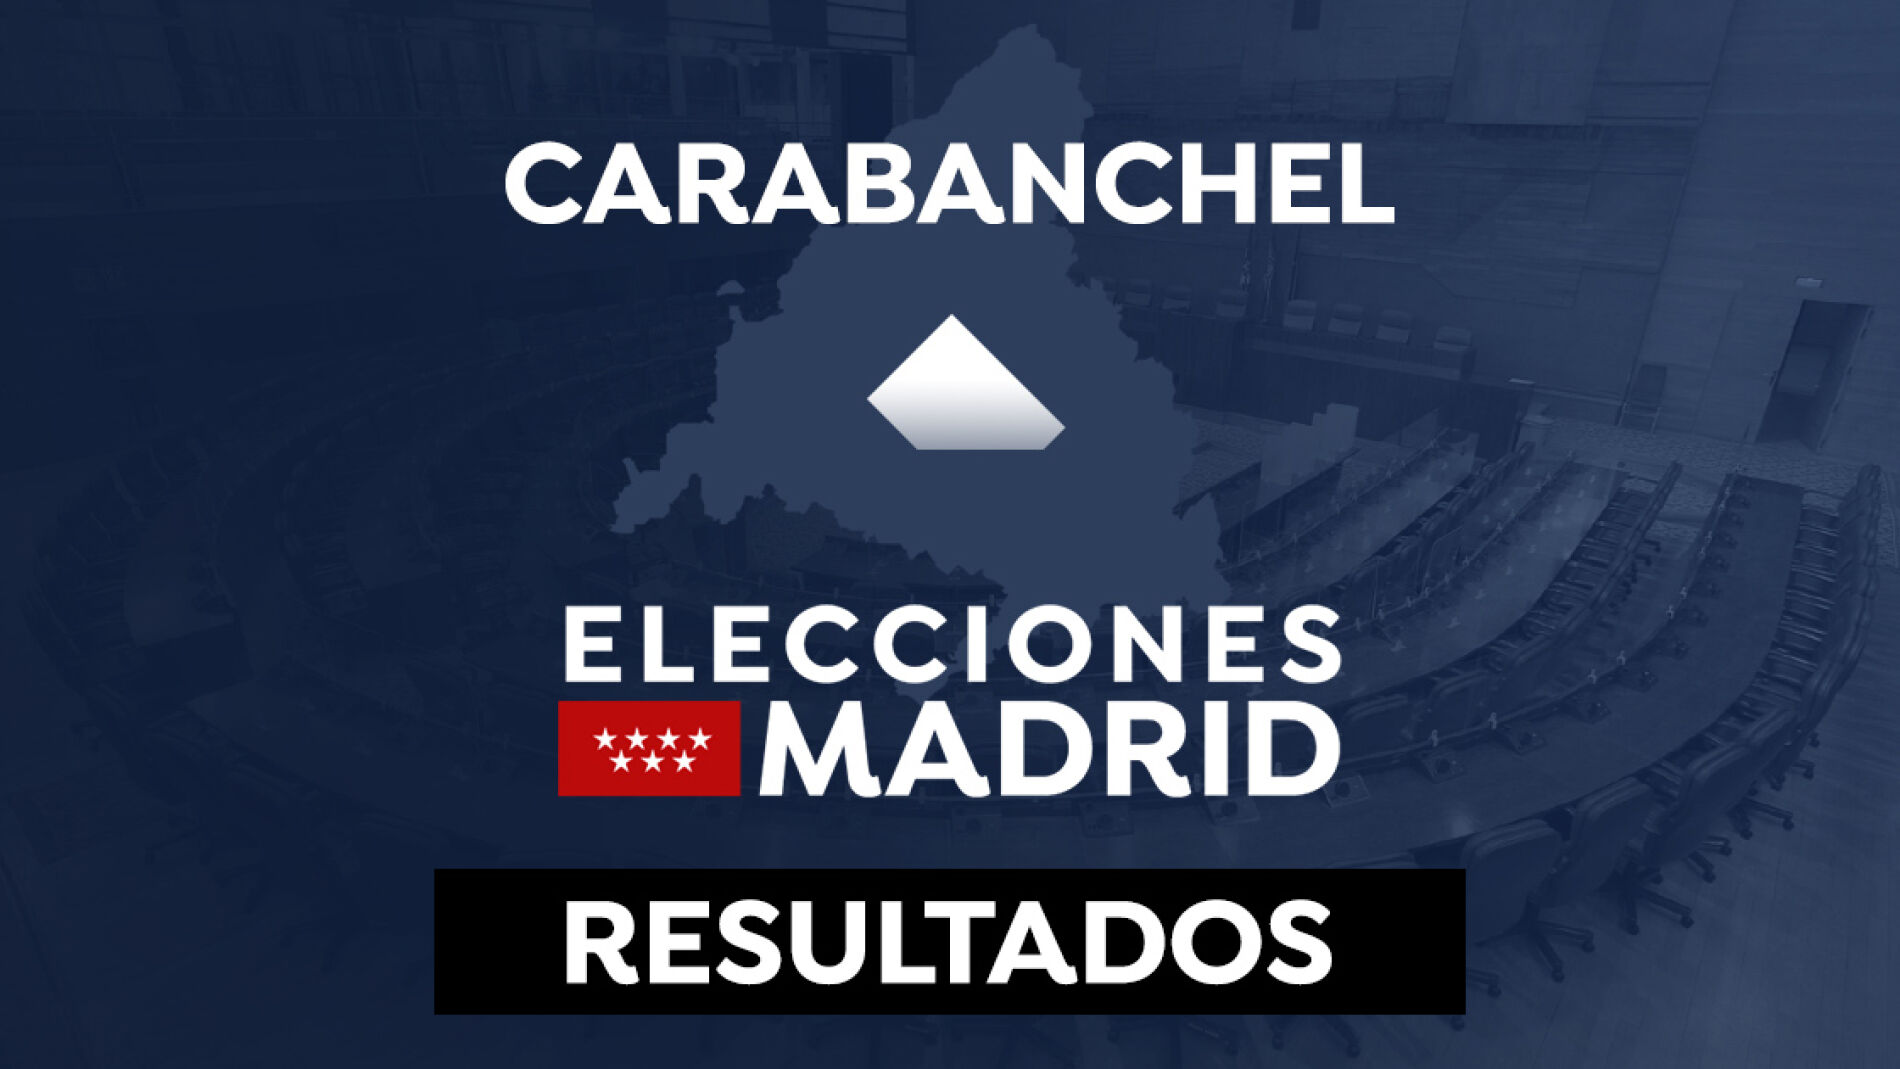 Resultado en Carabanchel de las elecciones a la Comunidad de Madrid